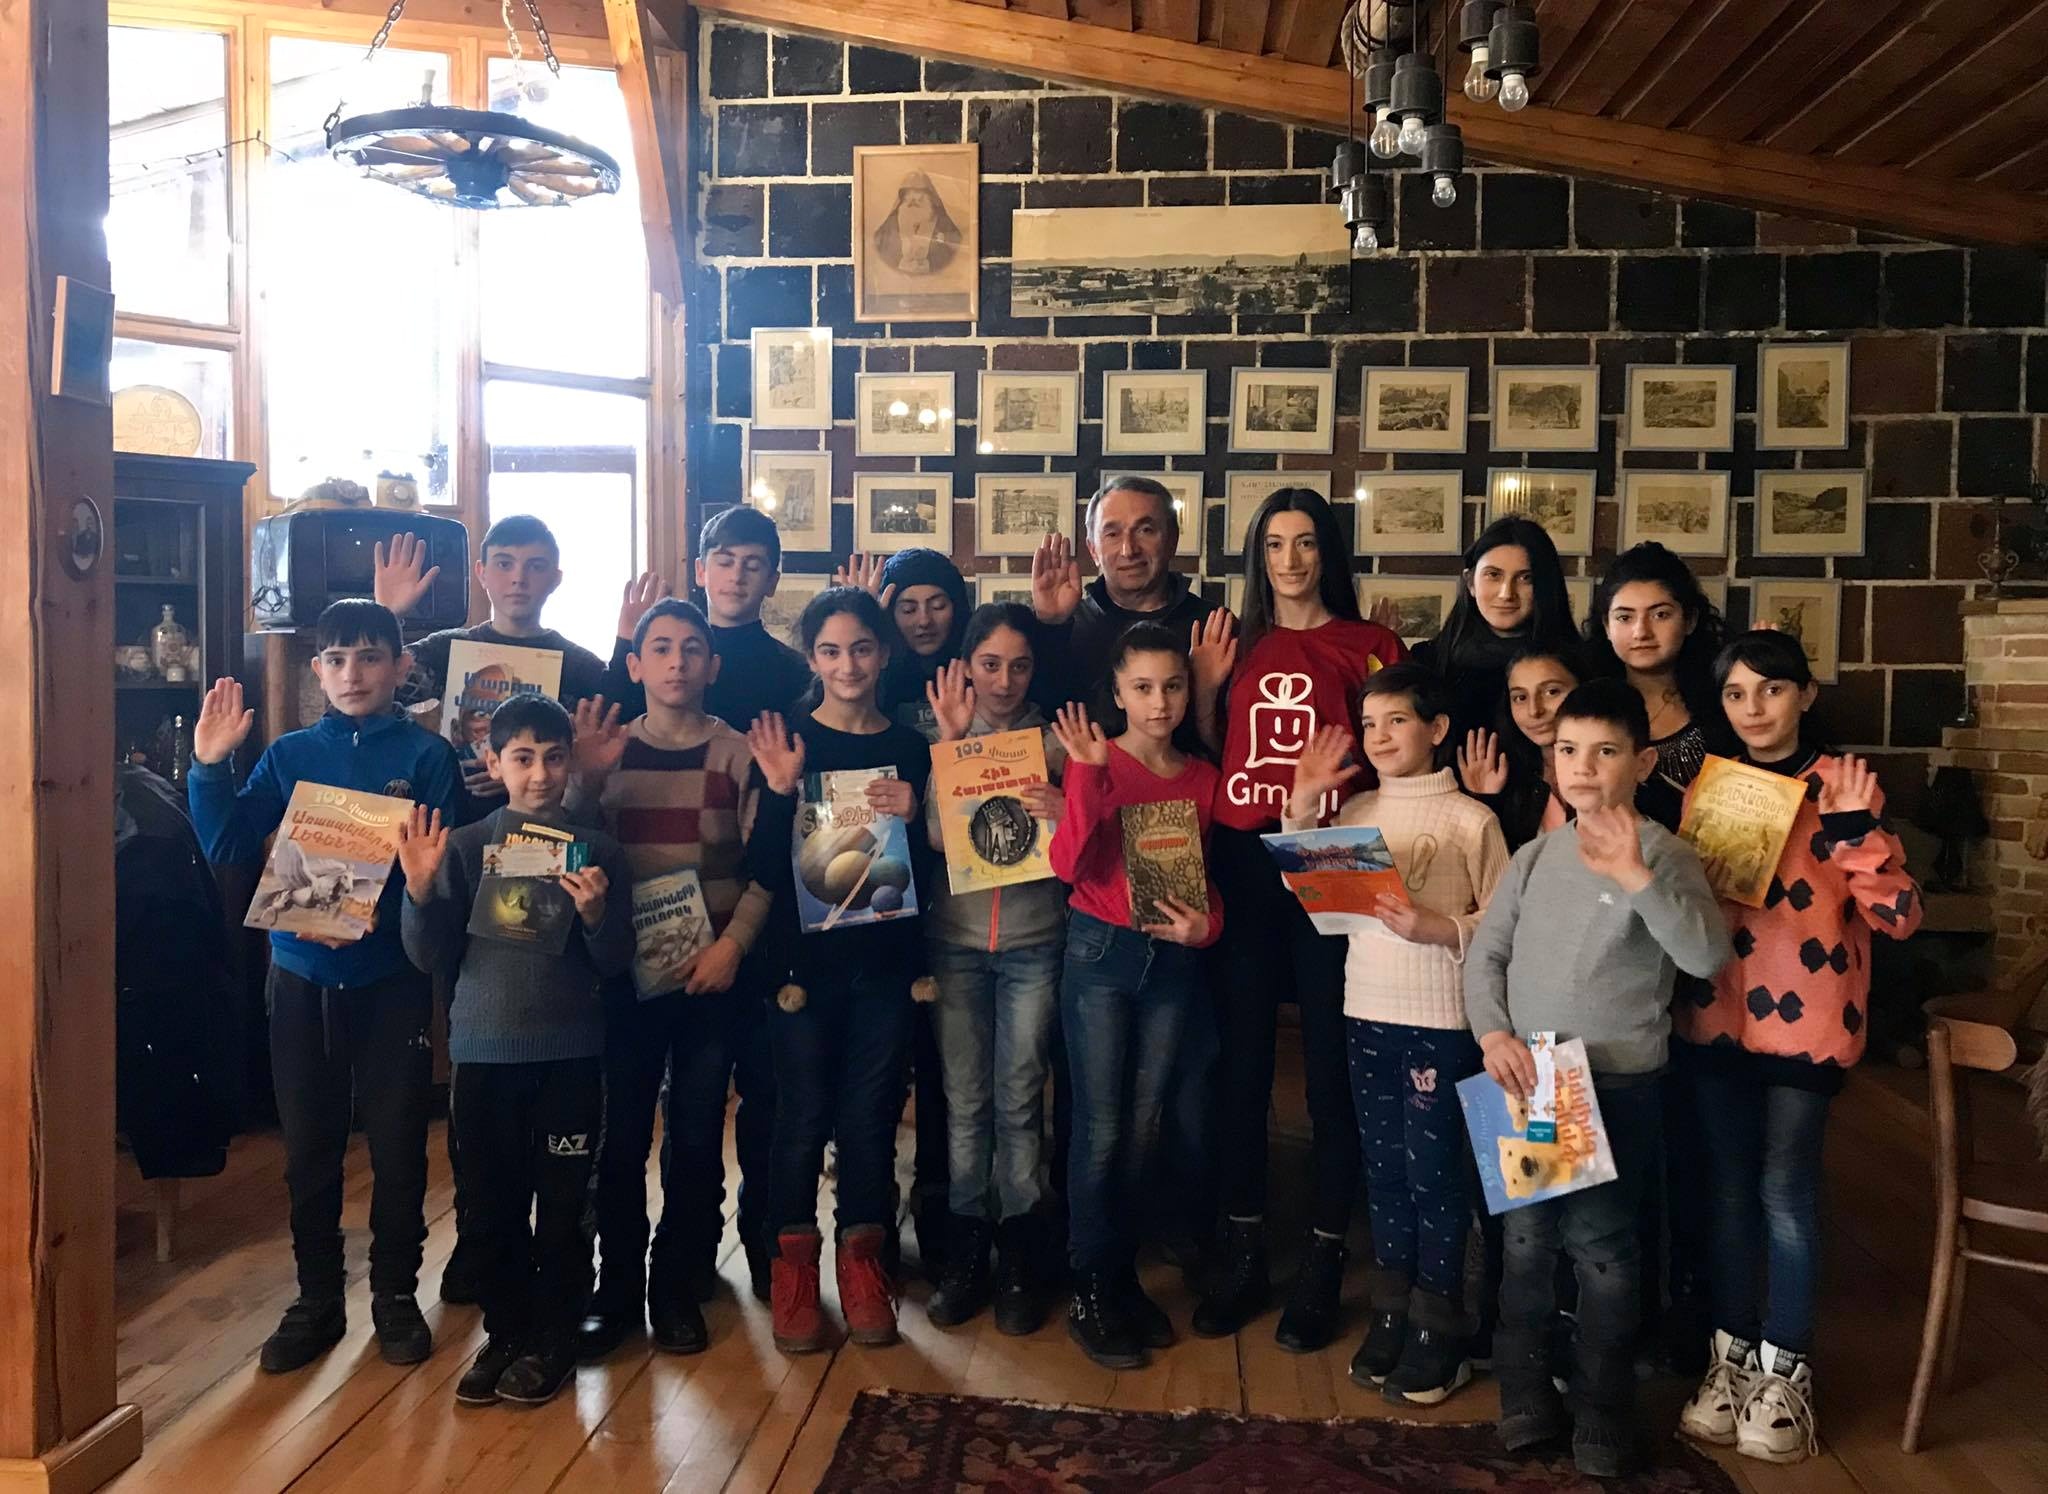 ՀՀ նախագահը գրքեր է նվիրել Շիրակ կենտրոնին և կազմակերպության շահառու ընտանիքների երեխաներին...